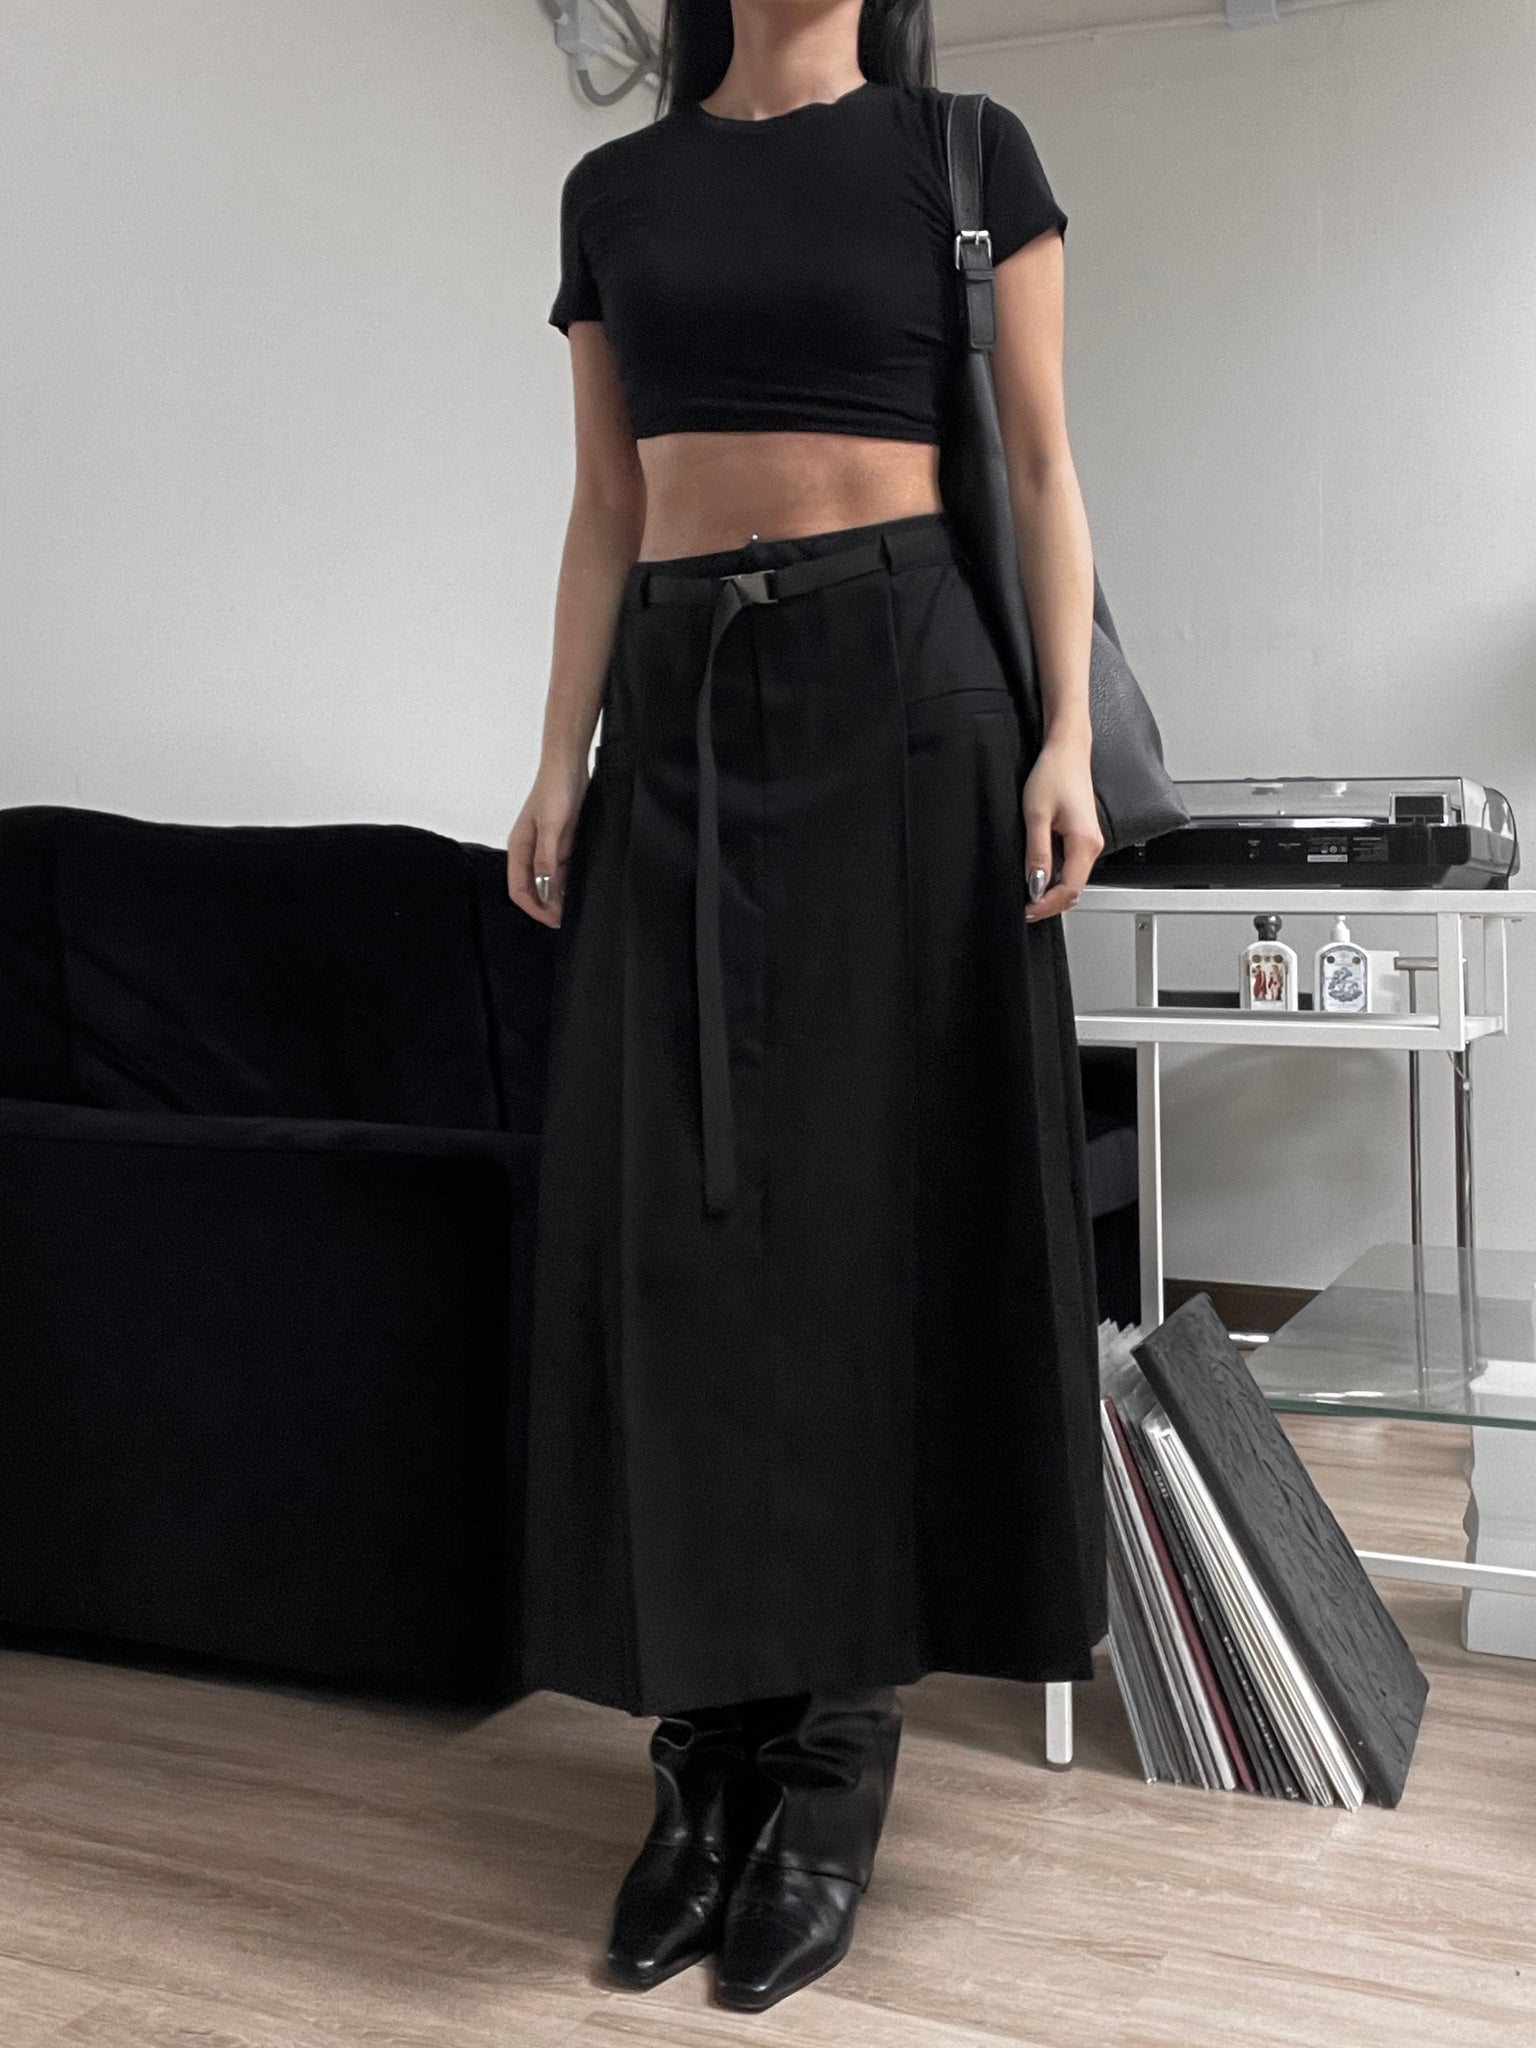 beith pleated skirt